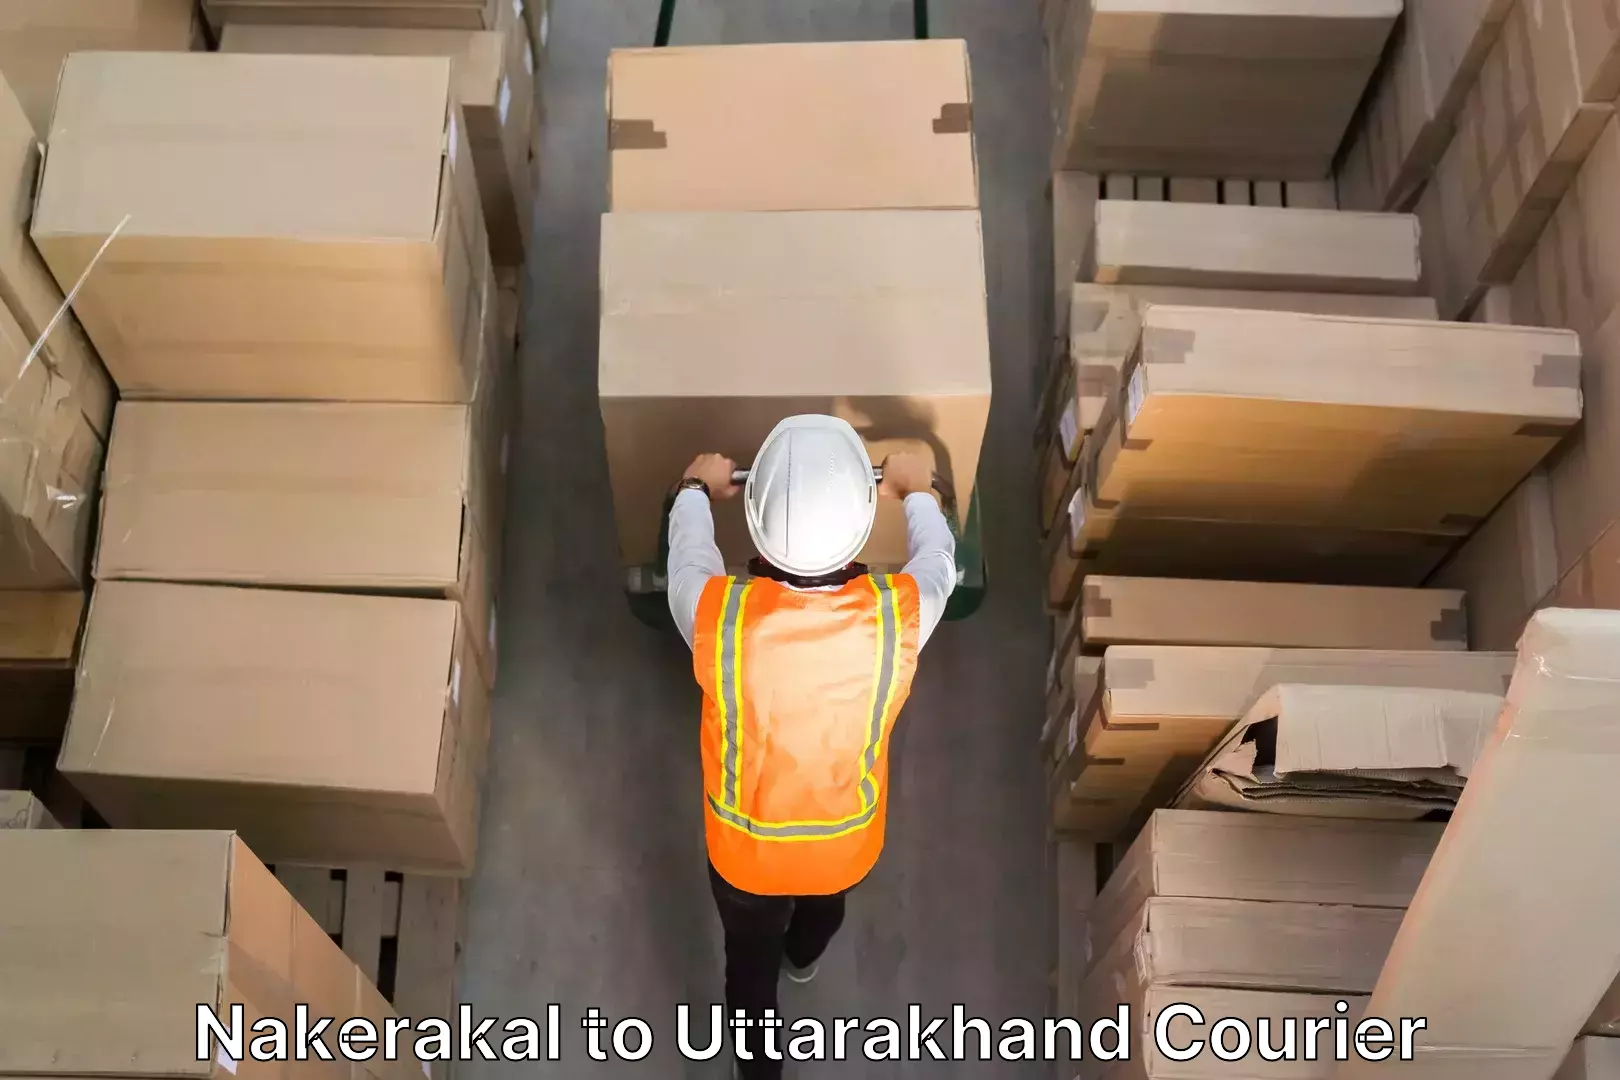 Professional moving assistance Nakerakal to Uttarakhand